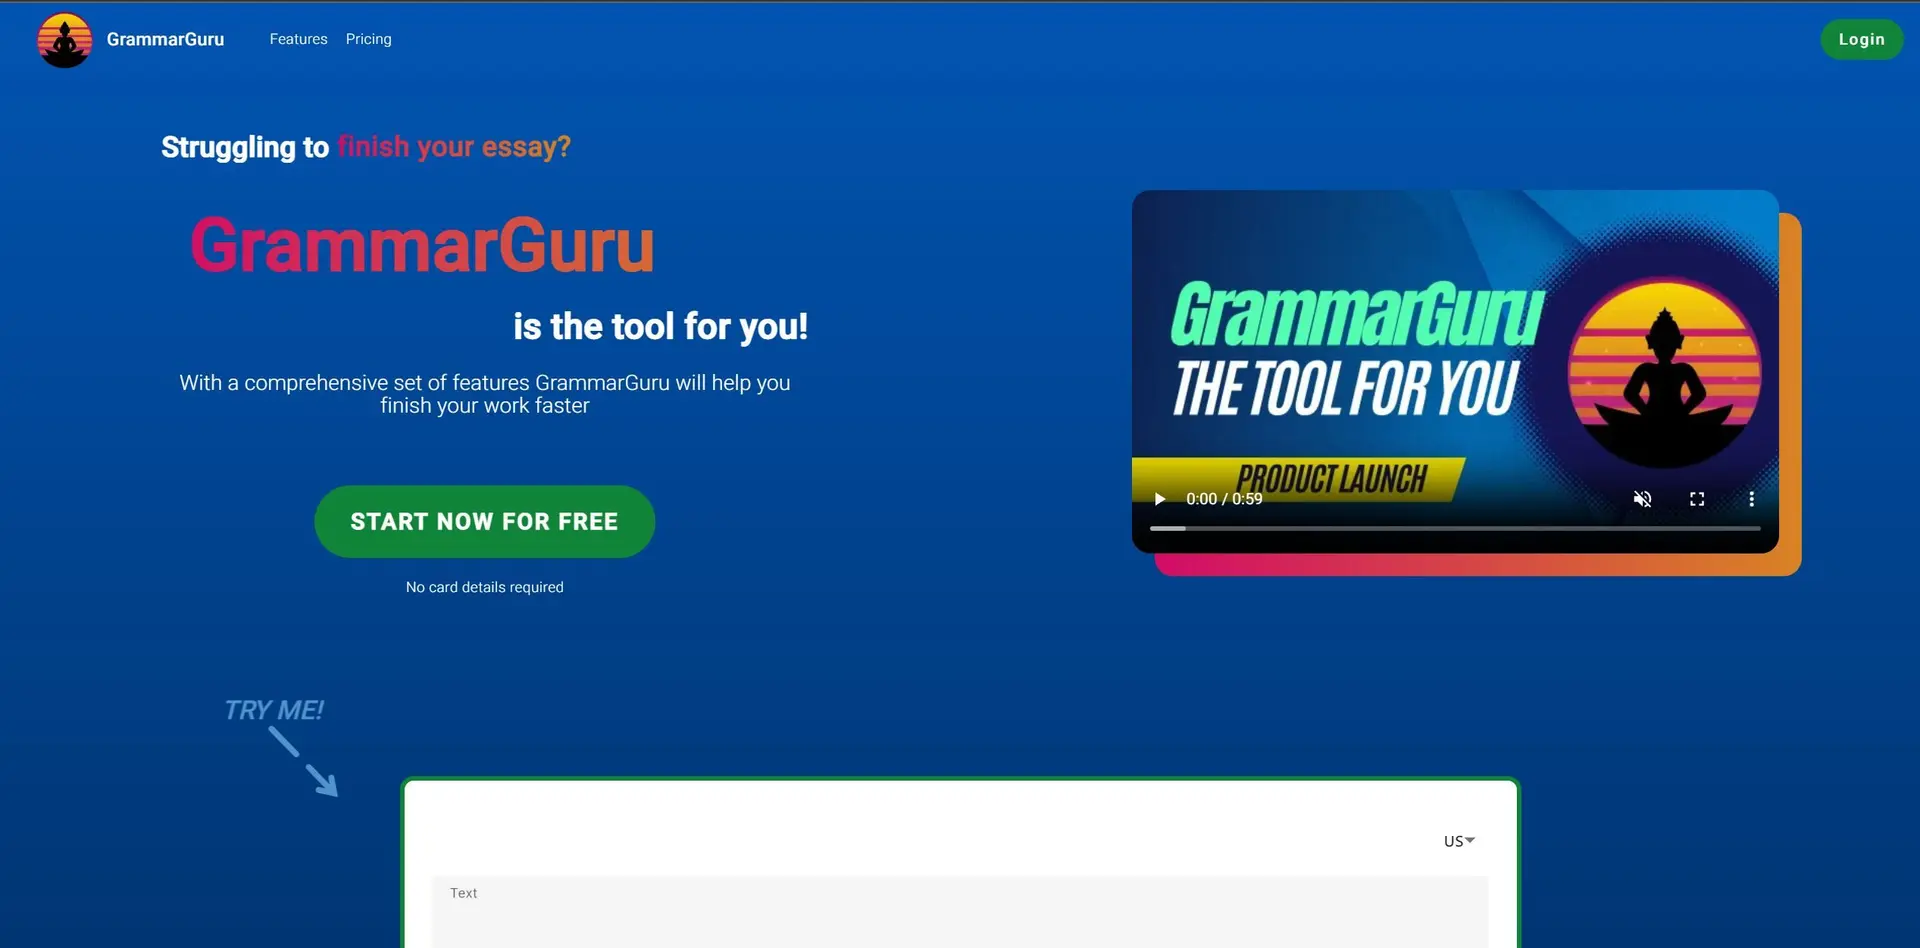 GrammarGuruwebsite picture